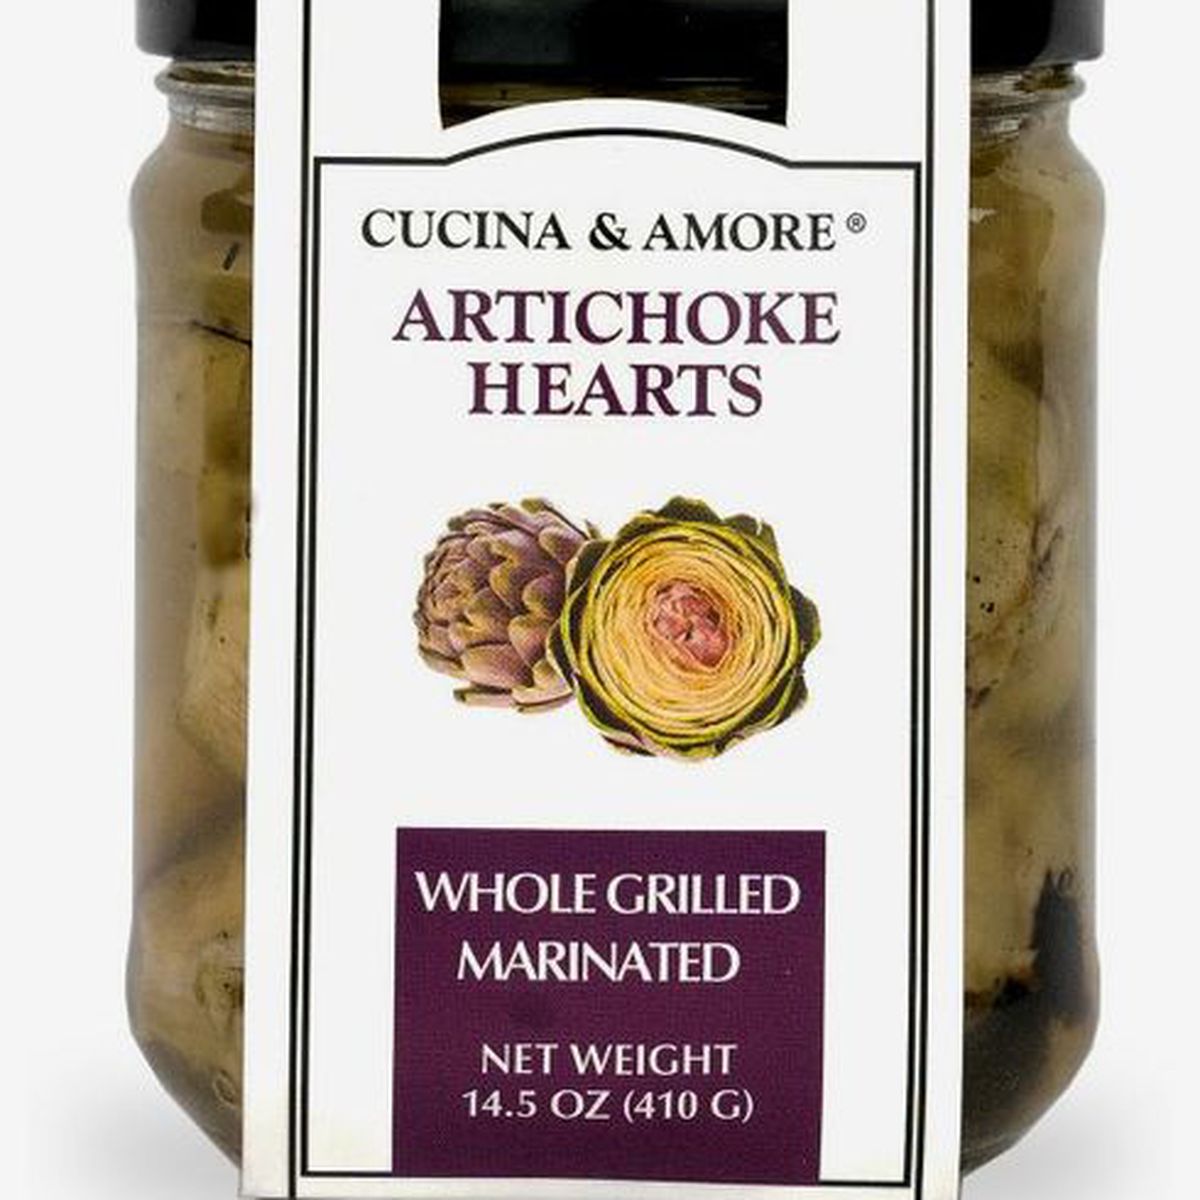 A jar of Artichoke hearts